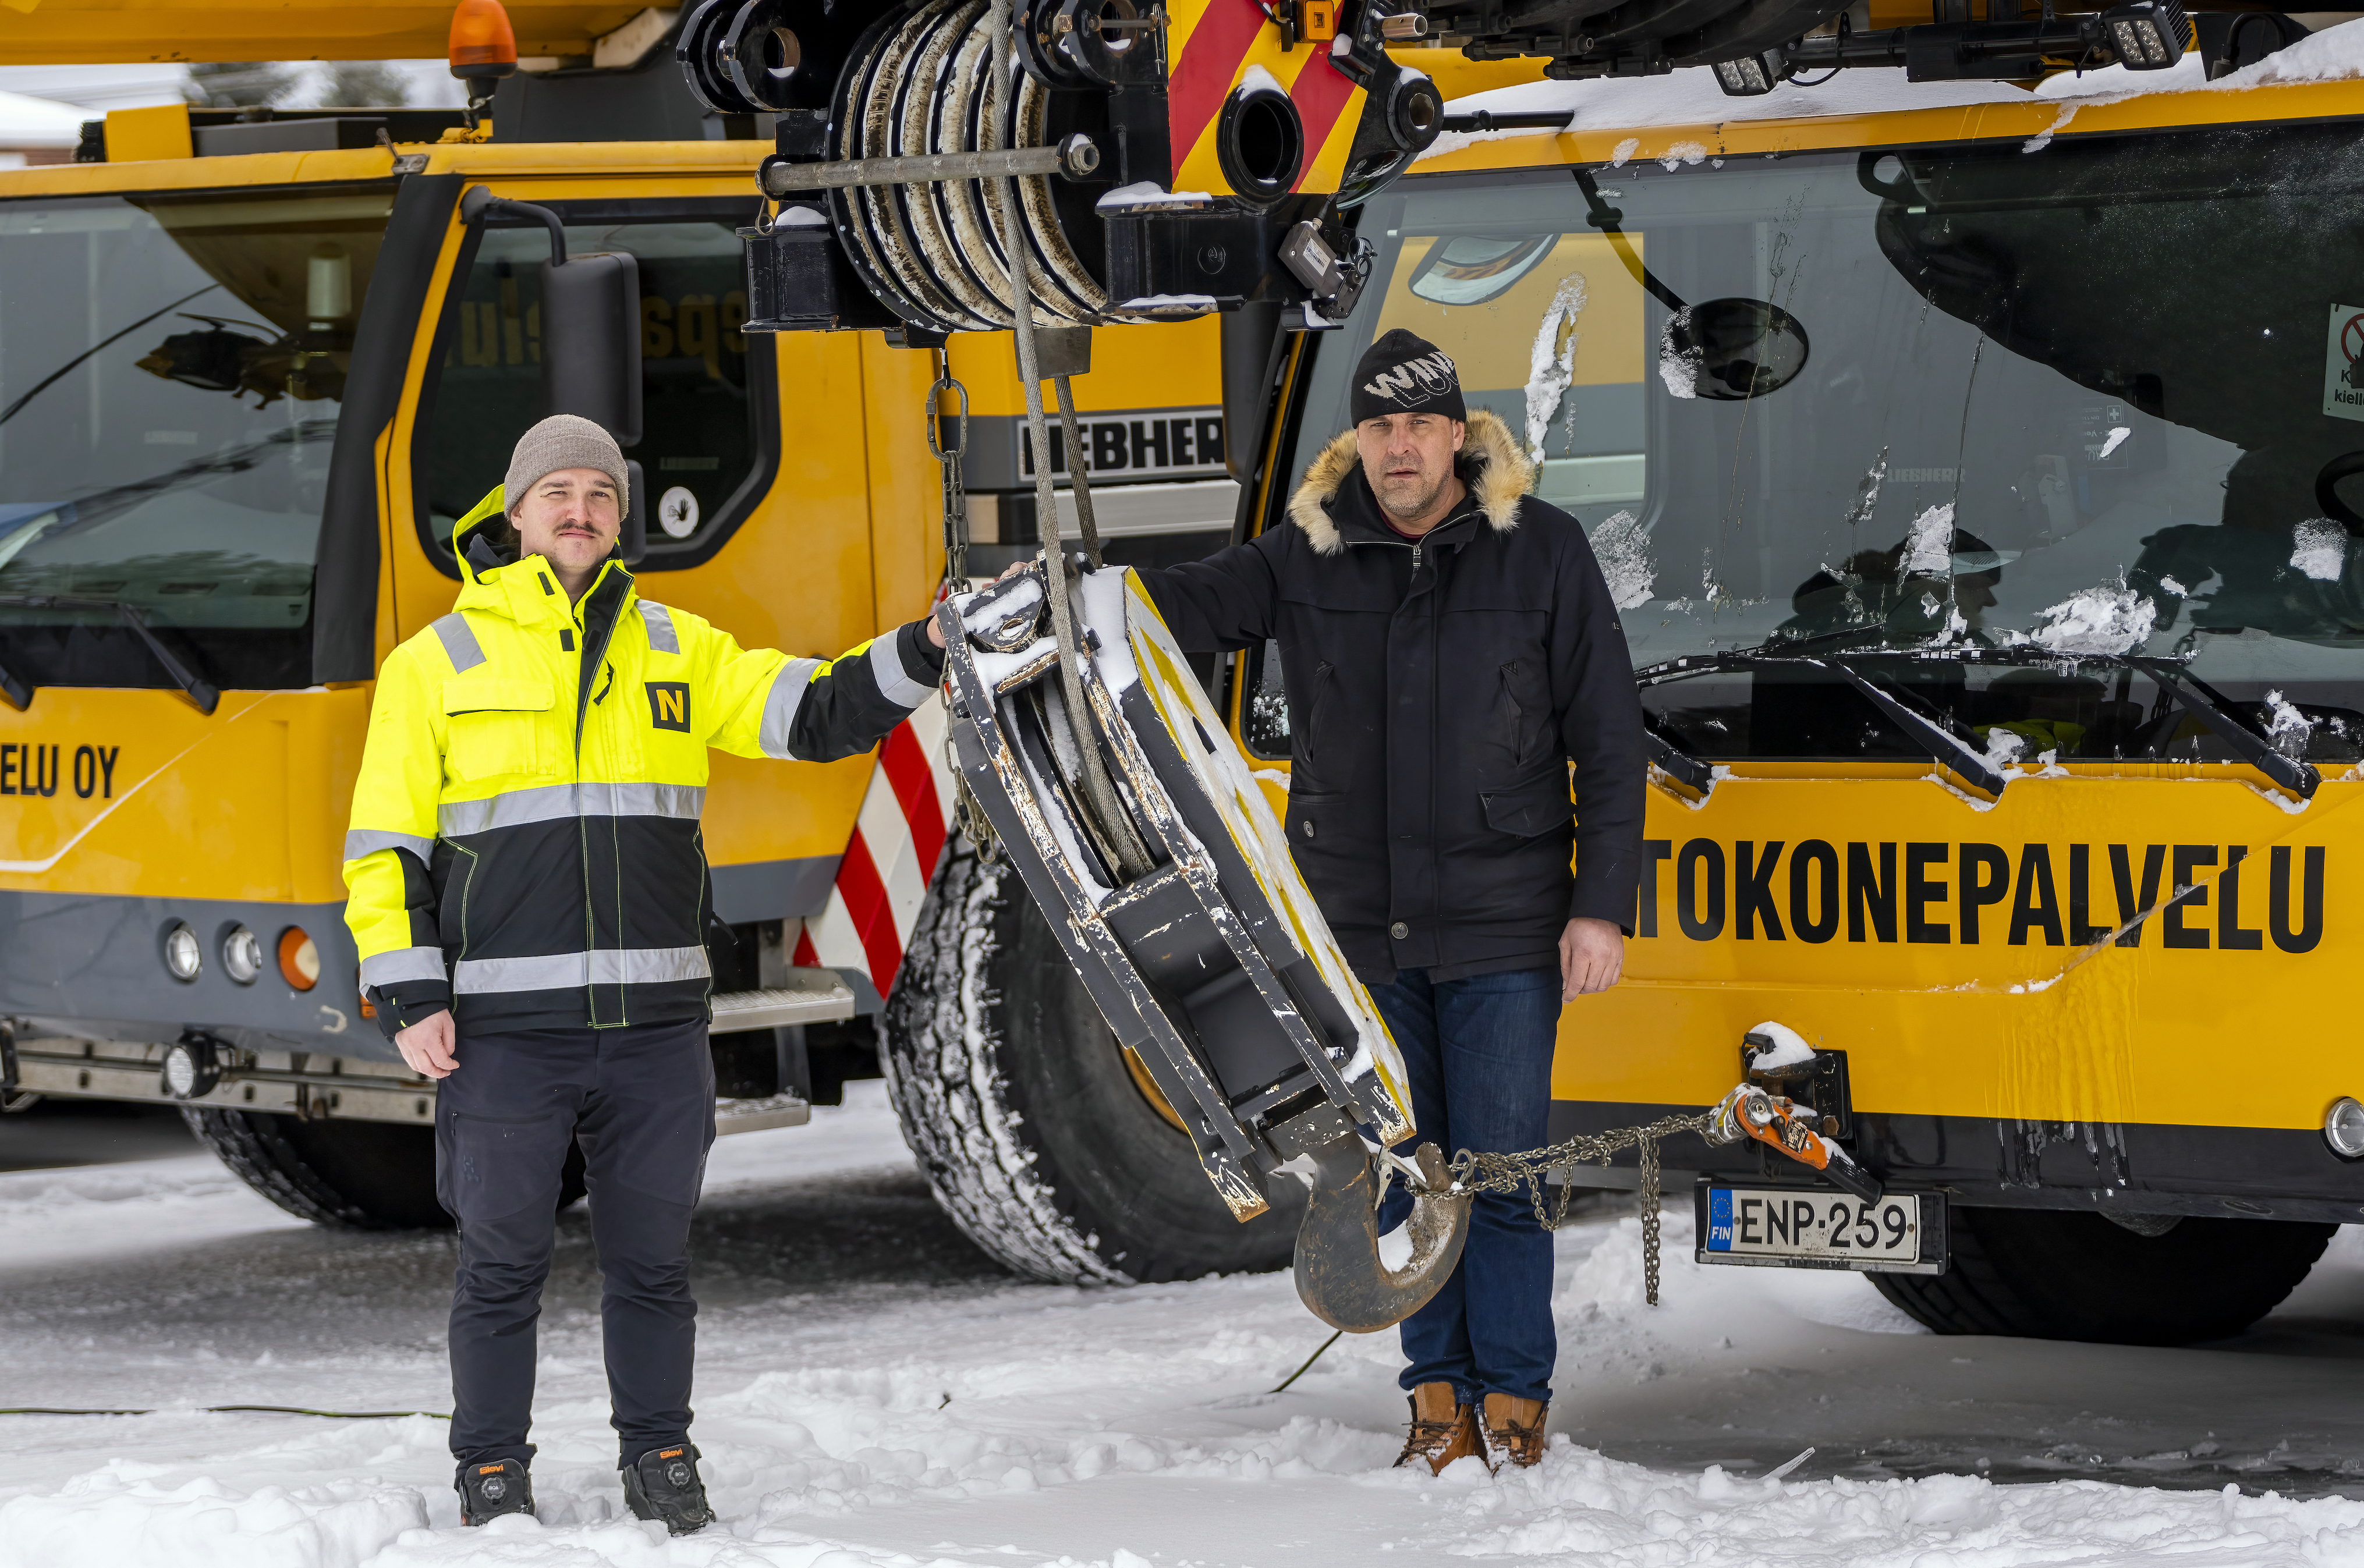 Nostokonepalvelu AT Oy:n Joni Mäkelä ja Sampo Saarijärvi kuvattuna yrityksen keltaisen ajoneuvonosturin edessä.